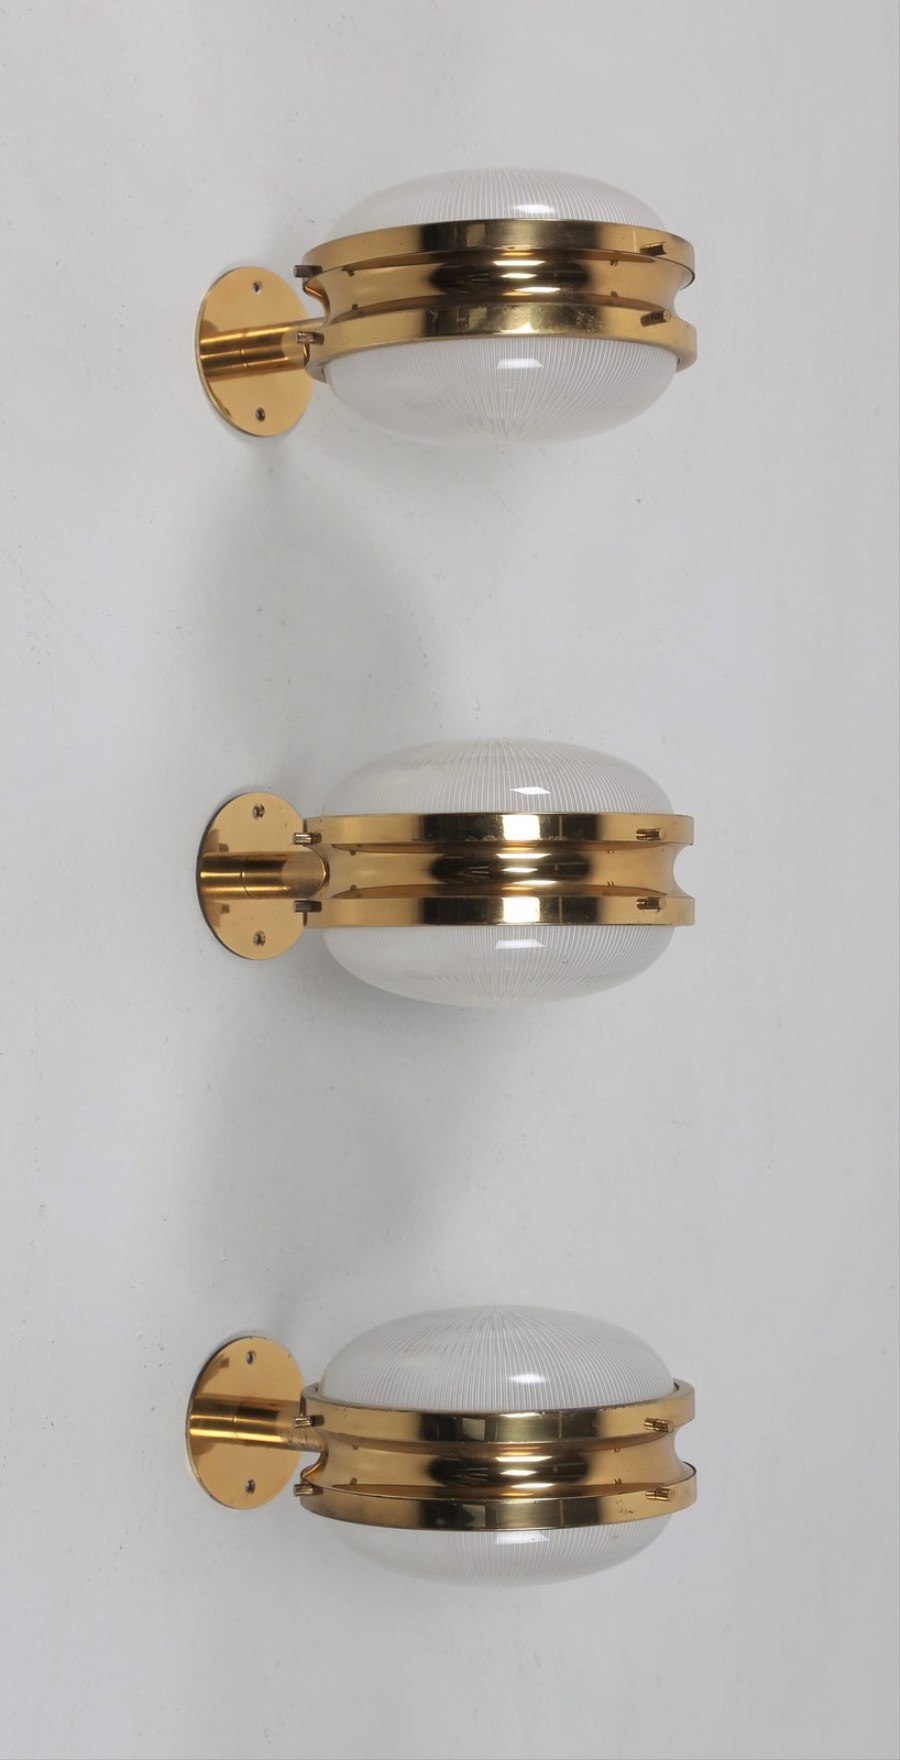 Tre lampade da parete in ottone e cristallo pressato, mod. Gamma/C per ARTEMIDE, 1960.
Pubblicazioni; Domus num. 366 maggio 1960 pag. 46; Catalogo Artemide 1969.
 (Sergio Mazza)